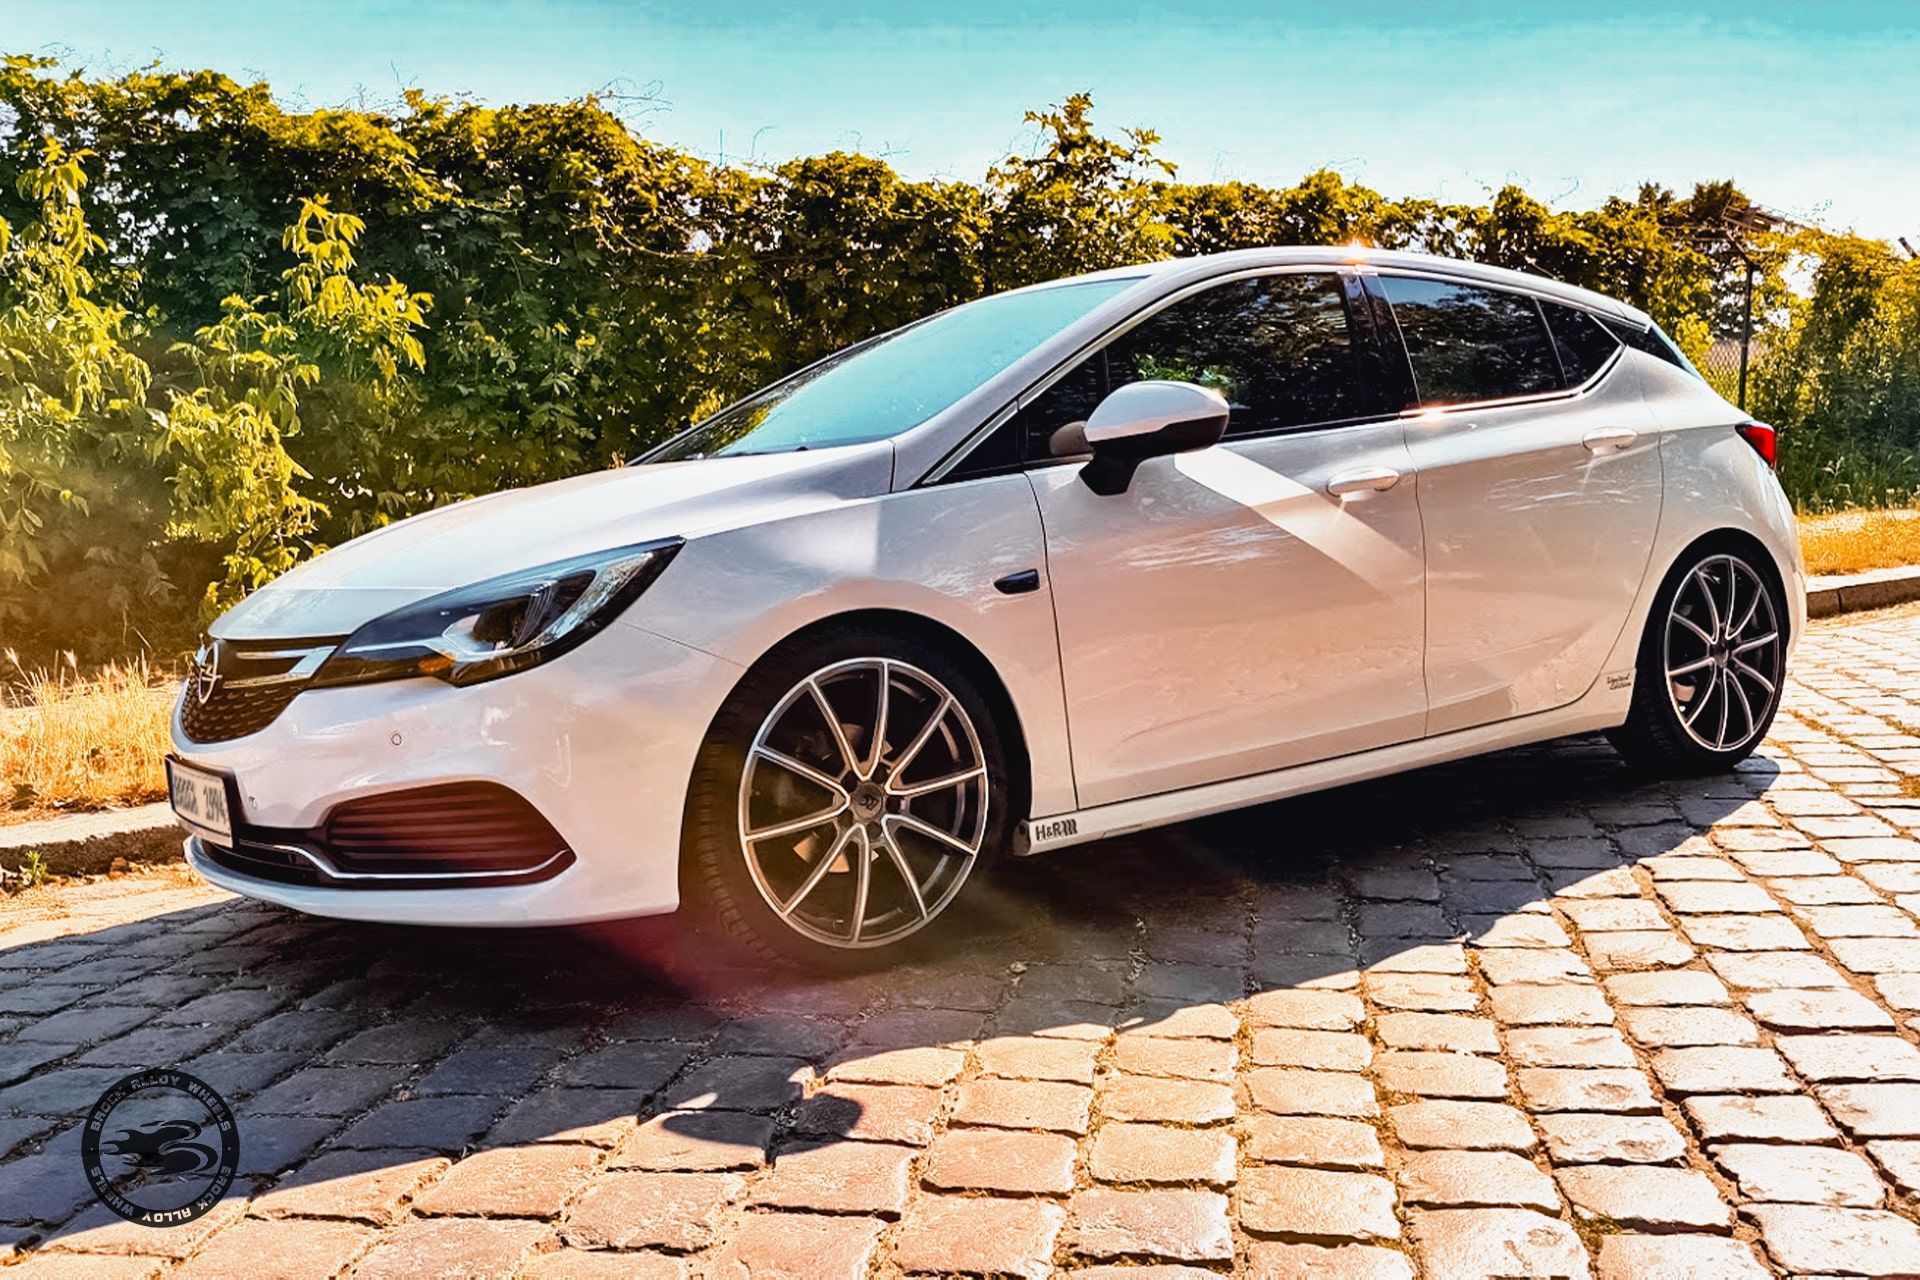 https://www.brock.de/wp-content/uploads/2021/07/Opel-Astra-K-RC-Design-RC32-HGVP-2.jpg